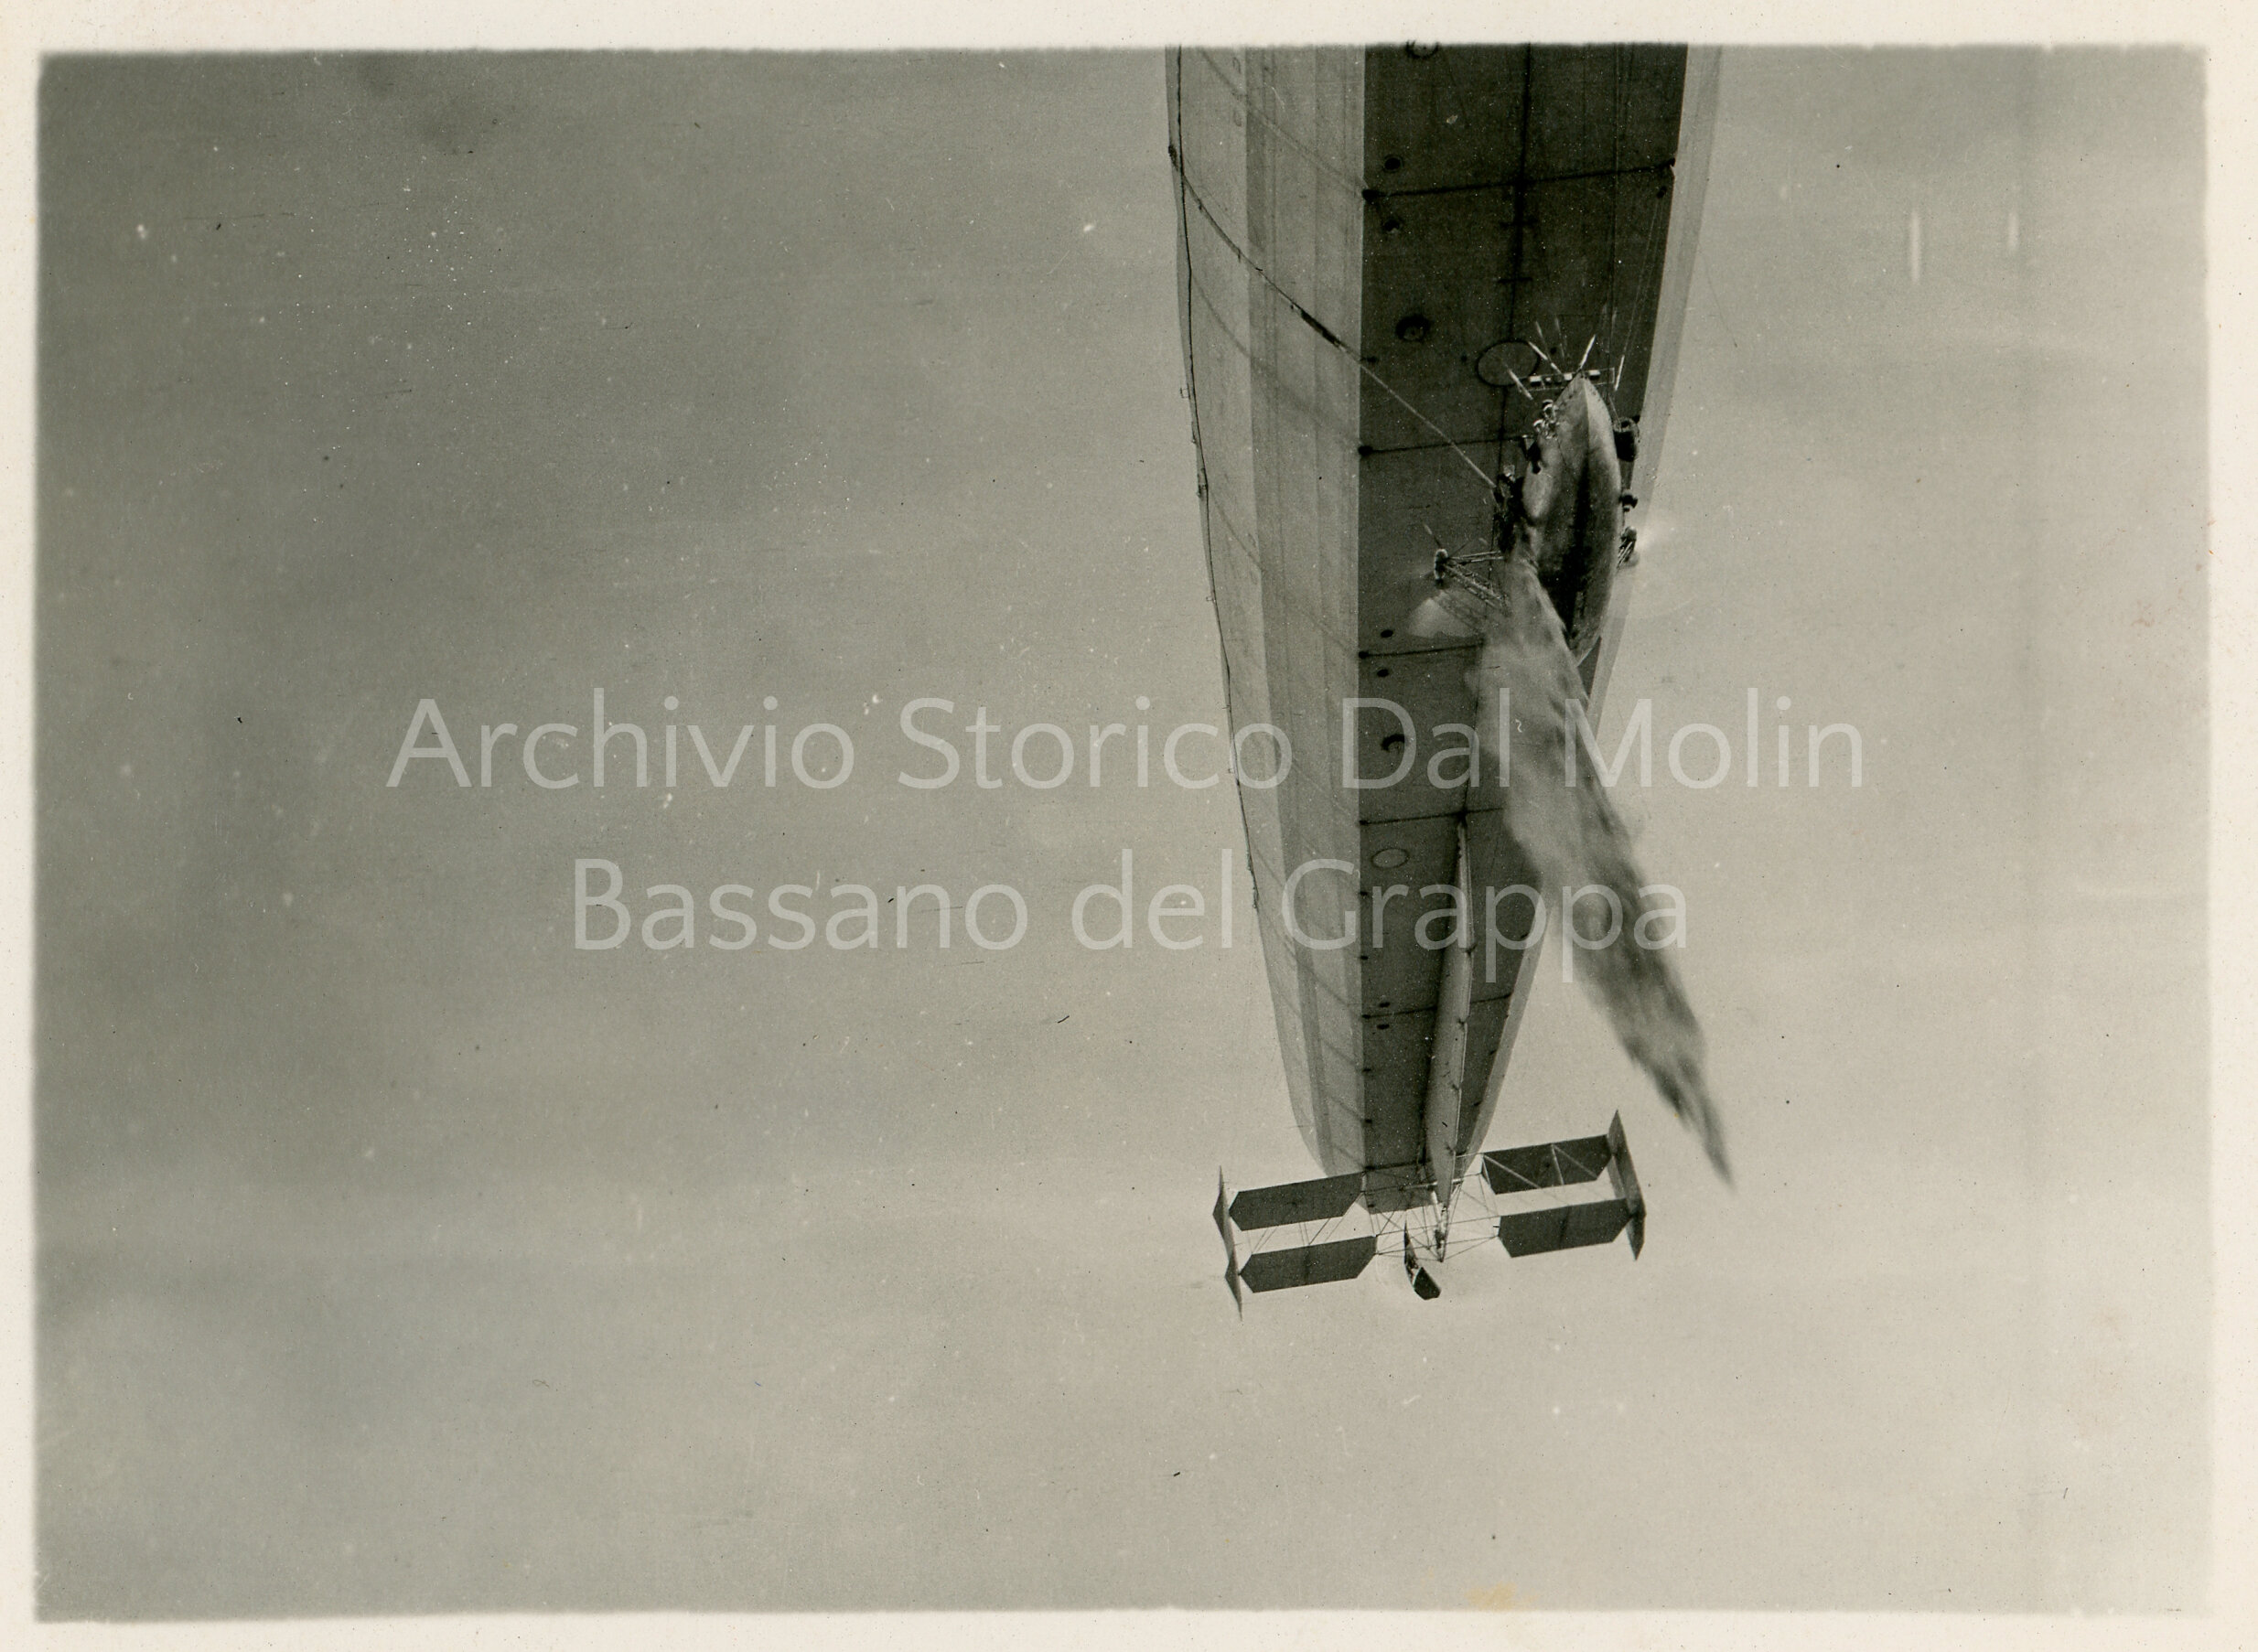 411 - dirigibile italiano che getta zavorra 1916 - 1917 - (ASDM).jpg